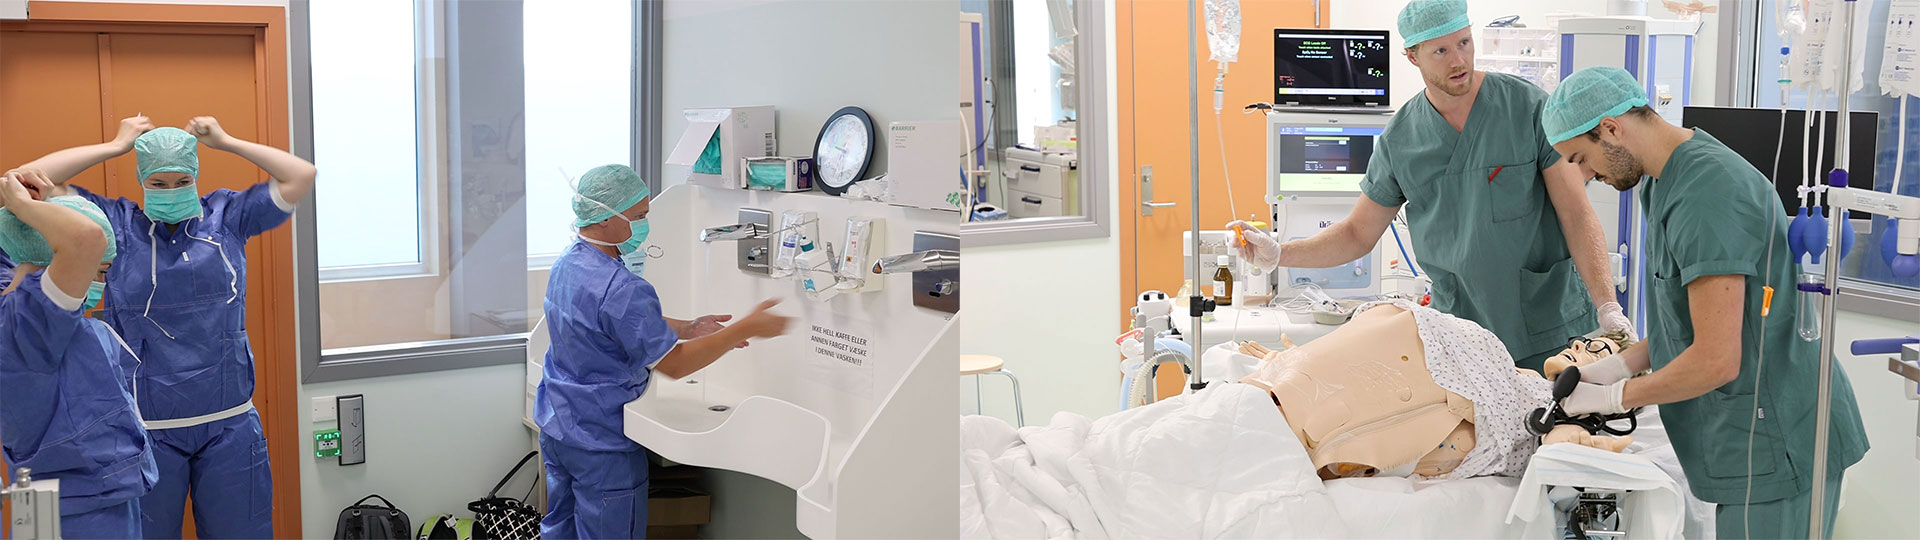 Her er to bilder som viser studenter under forberedelse til operasjon